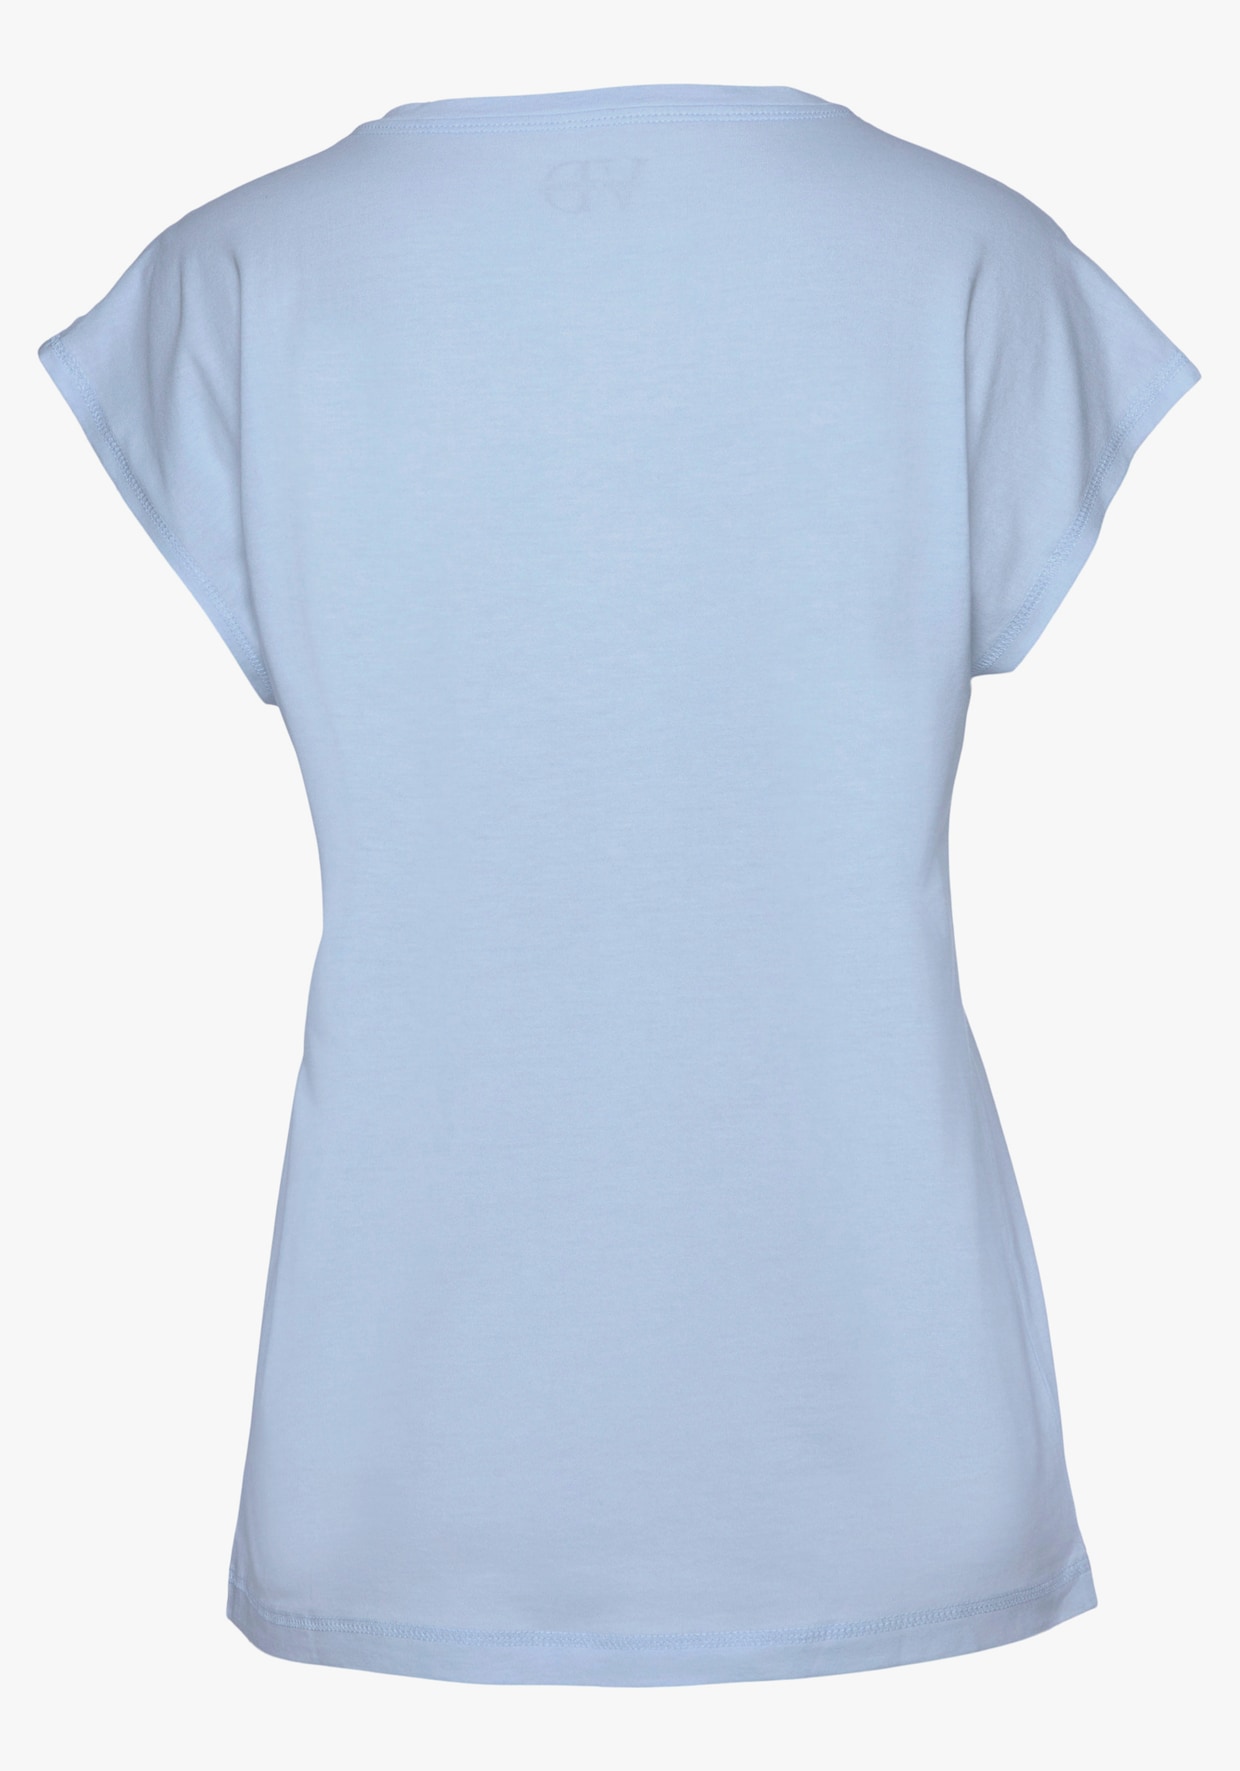 Vivance Dreams T-shirt - bleu clair